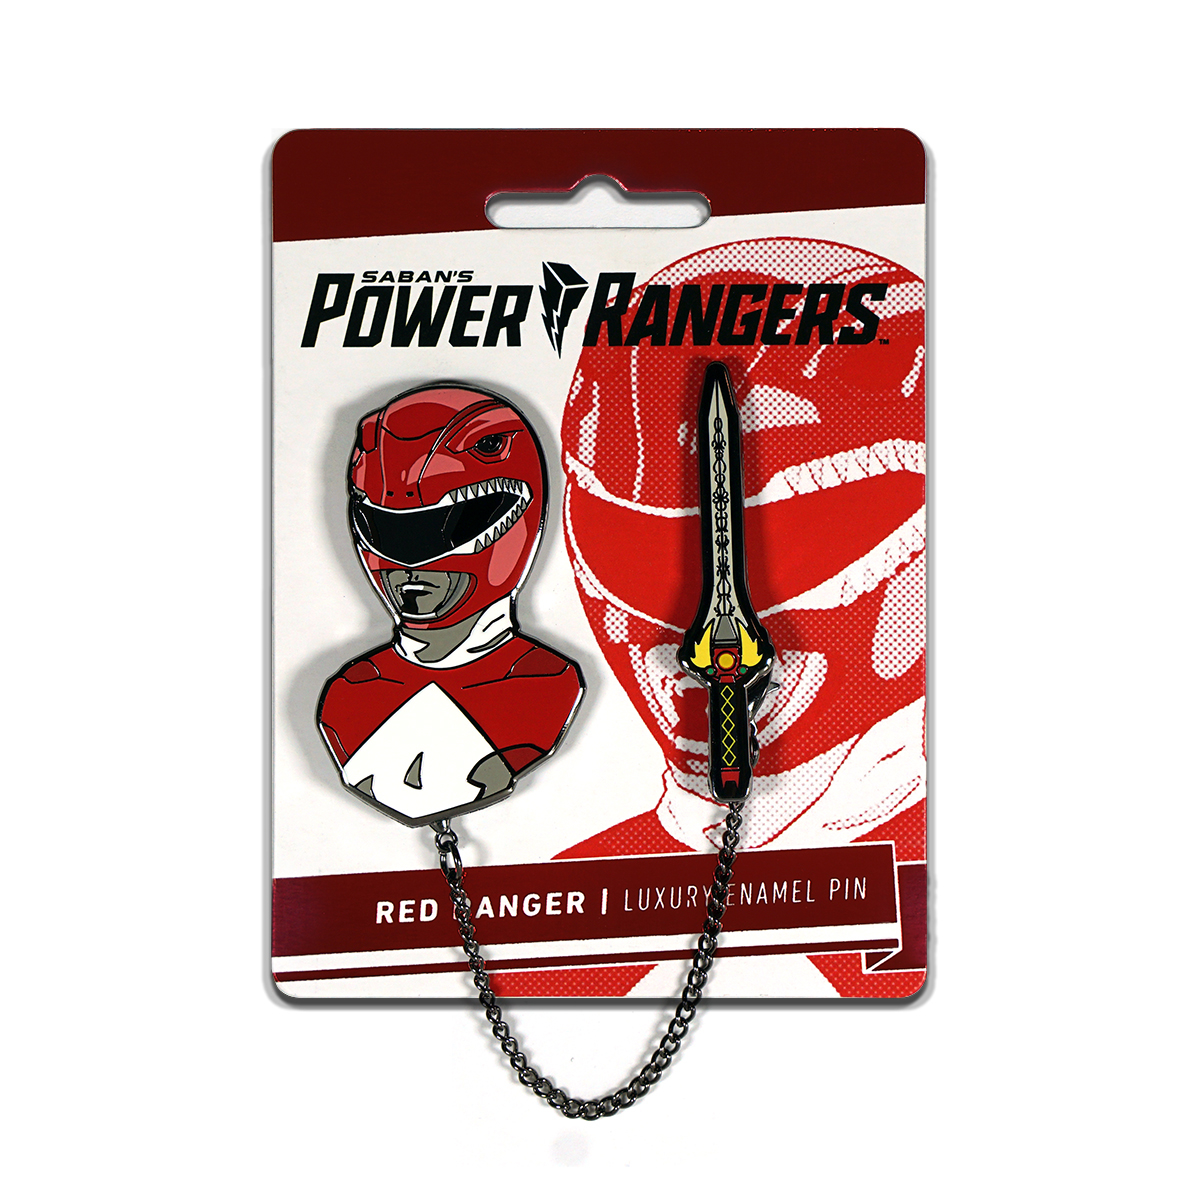 FEB208102 - POWER RANGERS RED RANGER ENAMEL PIN - Previews World